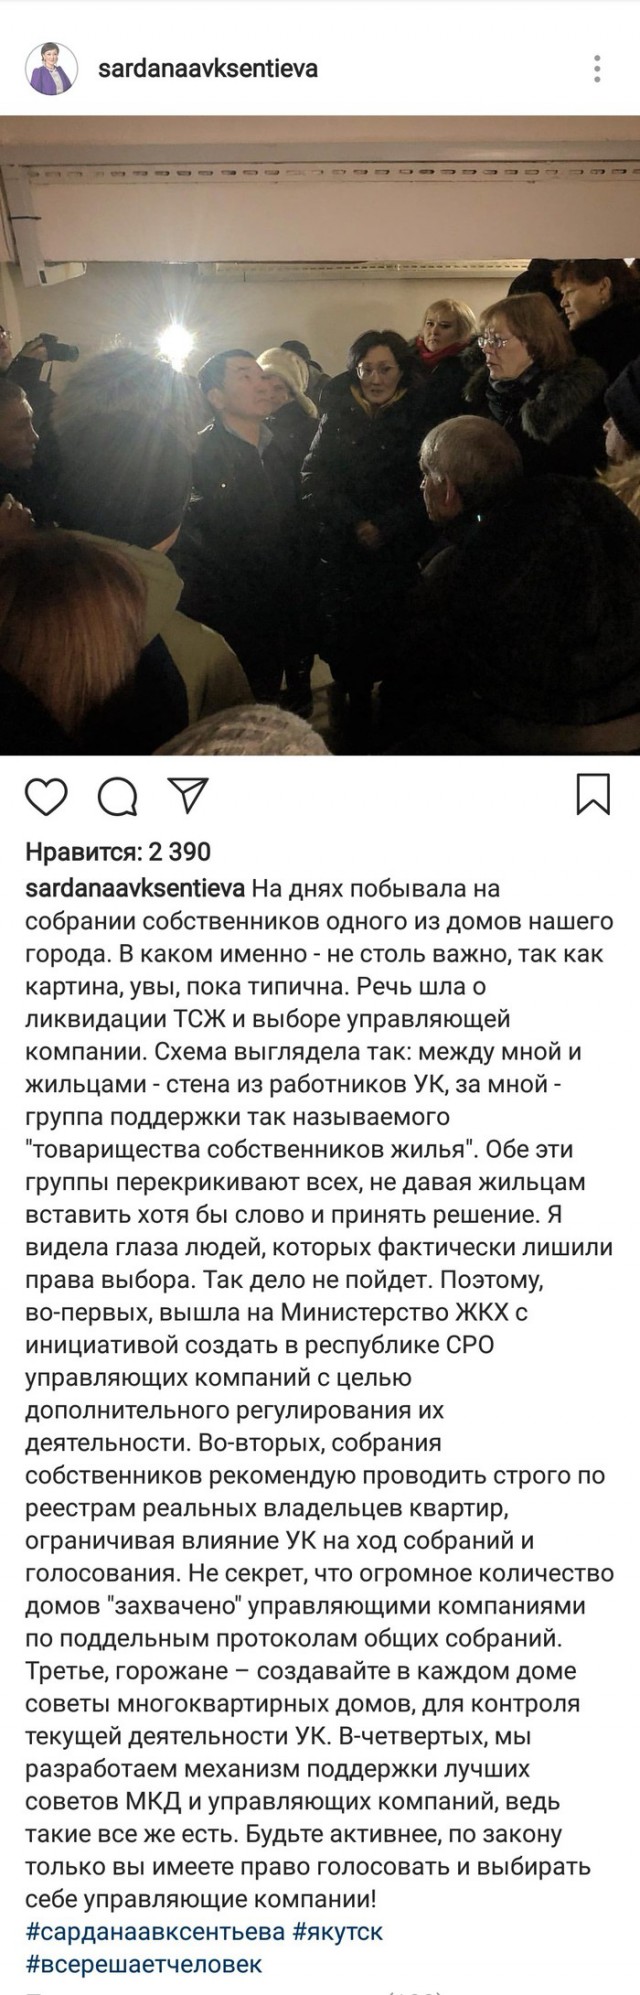 Новый мэр Якутска Сардана Авксентьева снова удивляет и радует одновременно